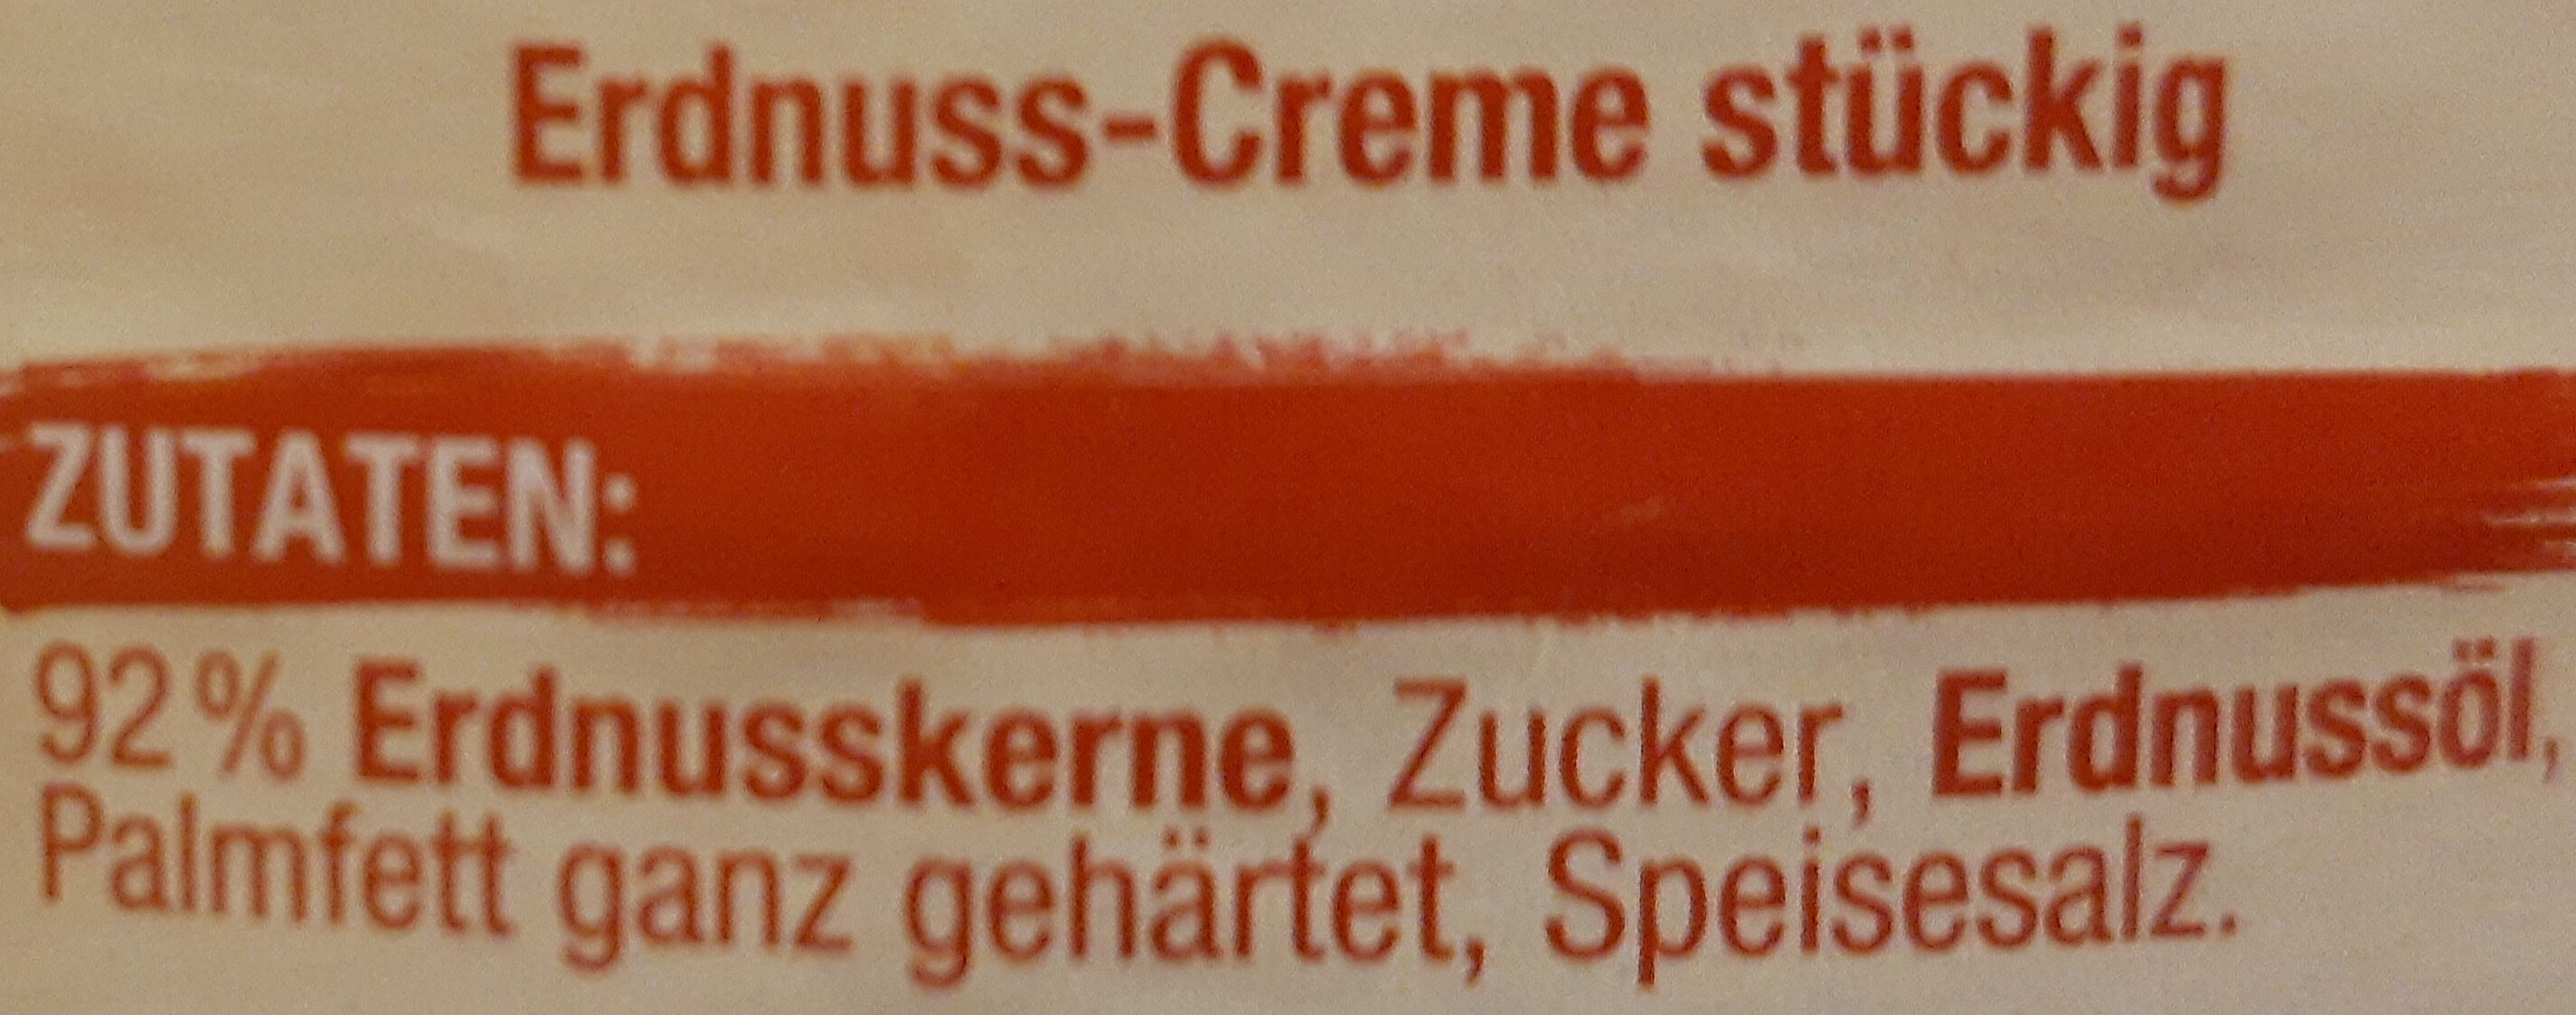 Crunchy Erdnuss-Creme - Ingredienser - de